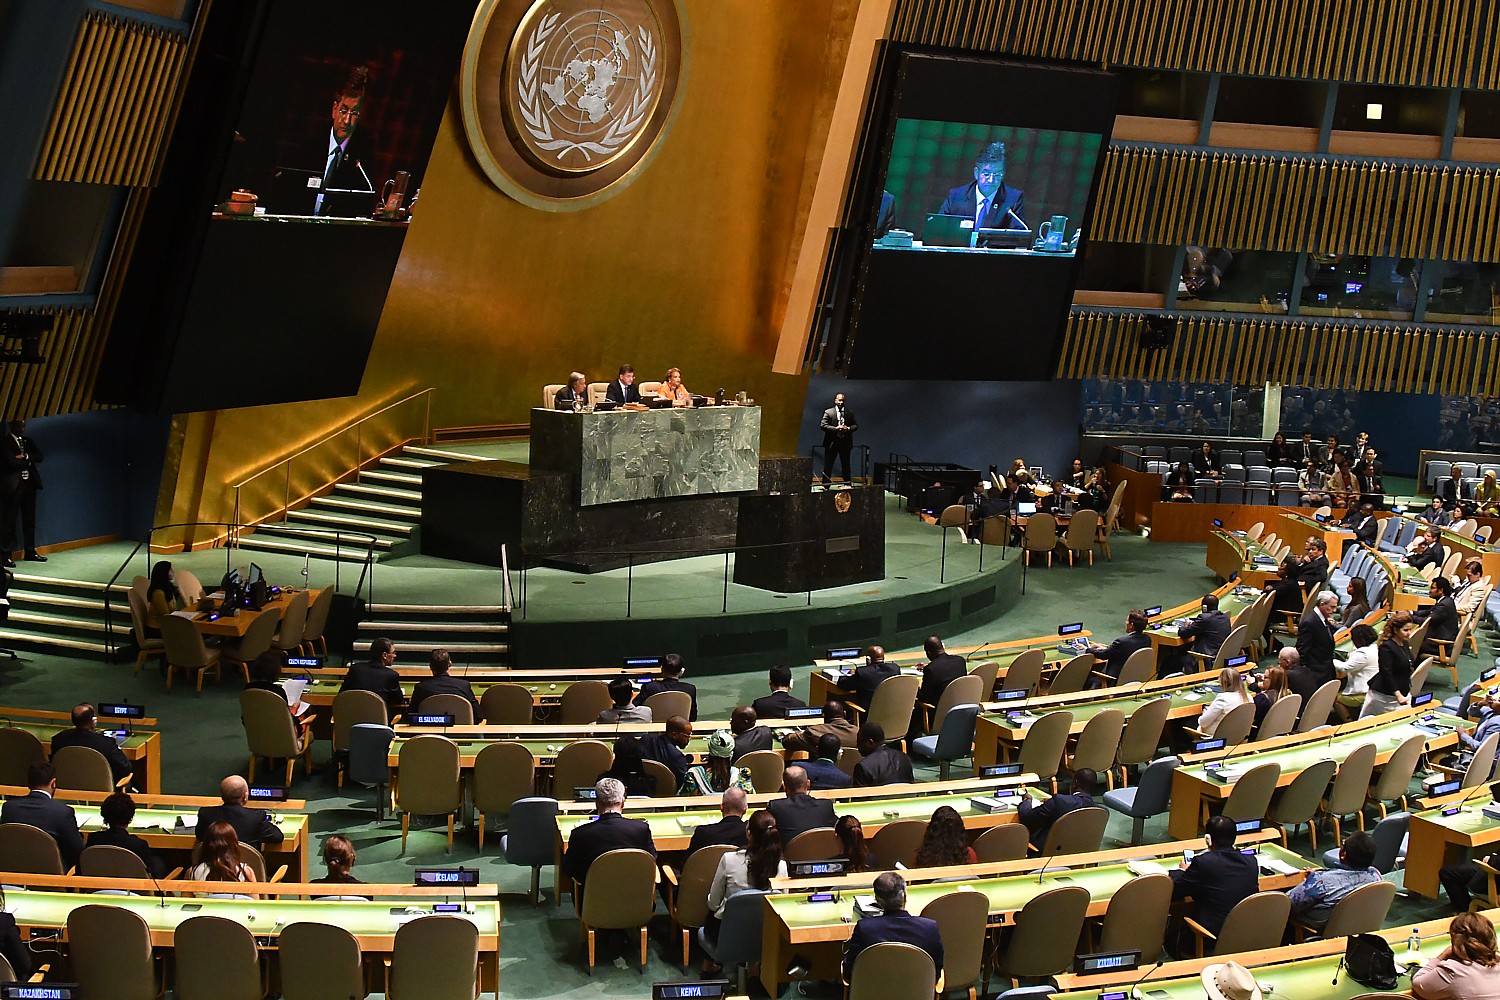 Ген оон. Зал Генеральной Ассамблеи ООН. Зал заседания Генеральной Ассамблеи ООН. Зал заседаний Генассамблеи ООН. Генеральная Ассамблея ООН 2018.